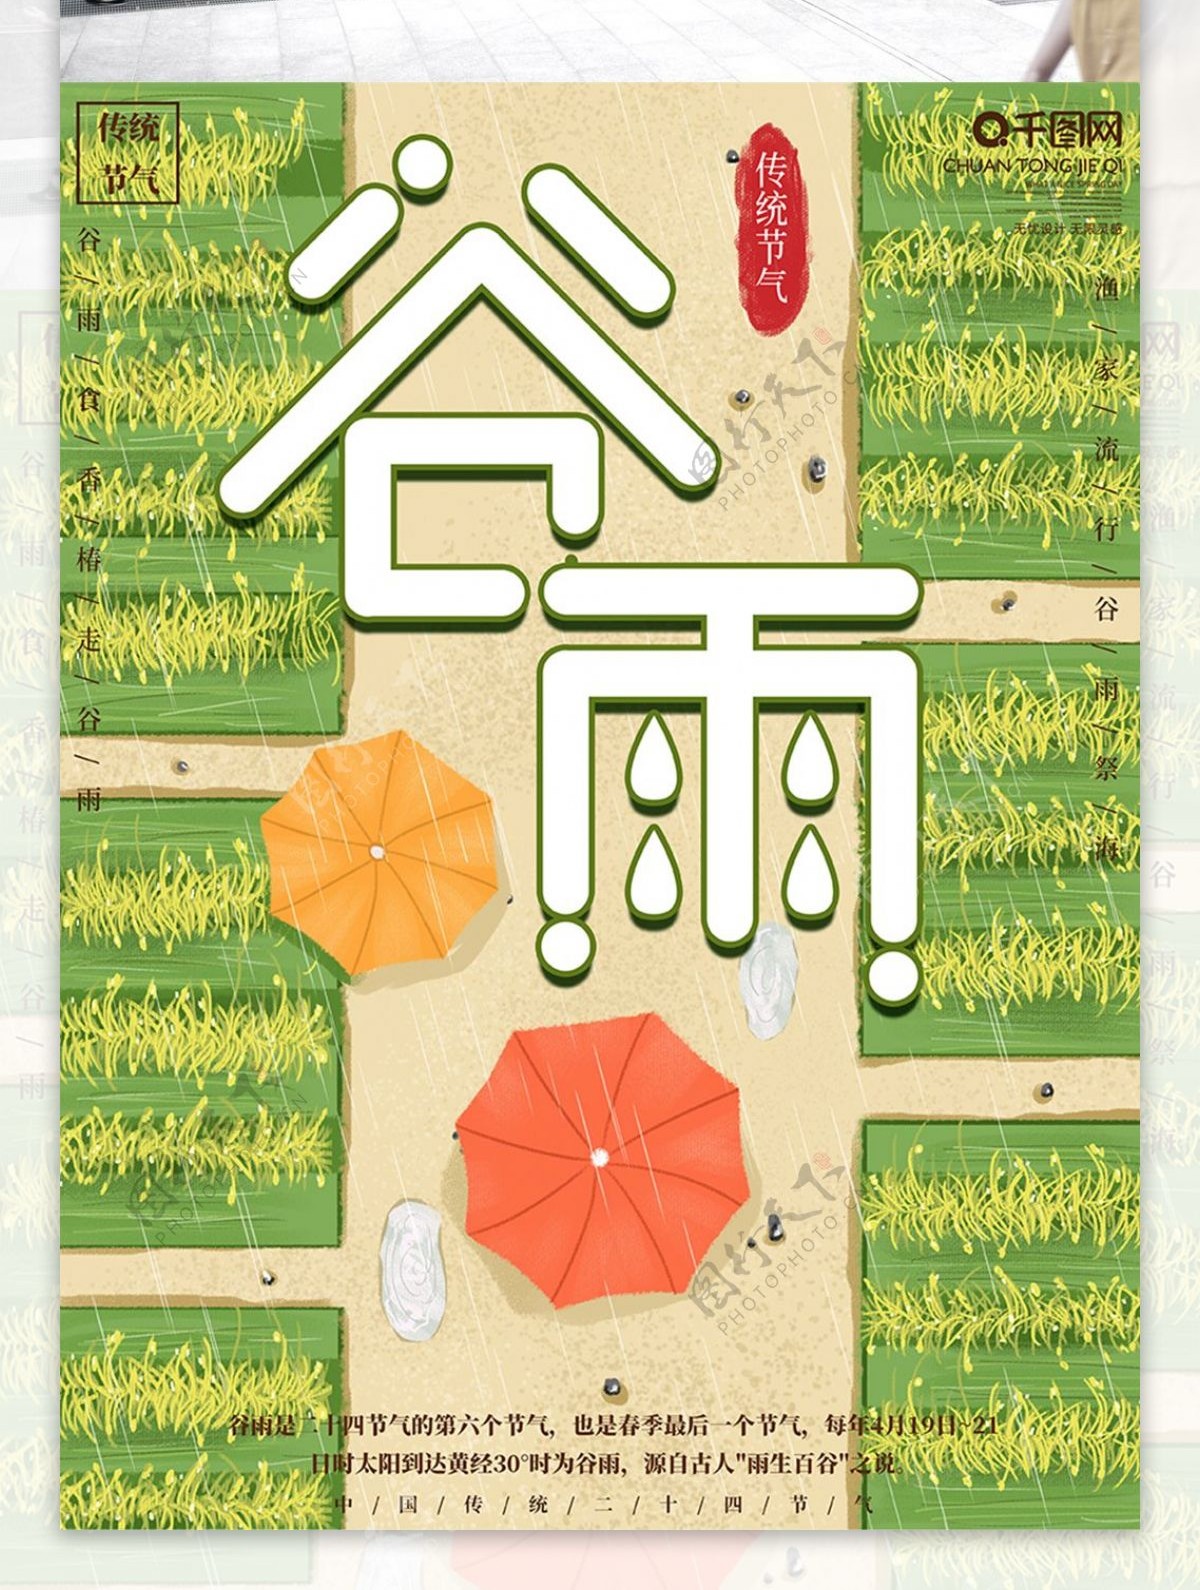 原创手绘简约谷雨节日宣传海报